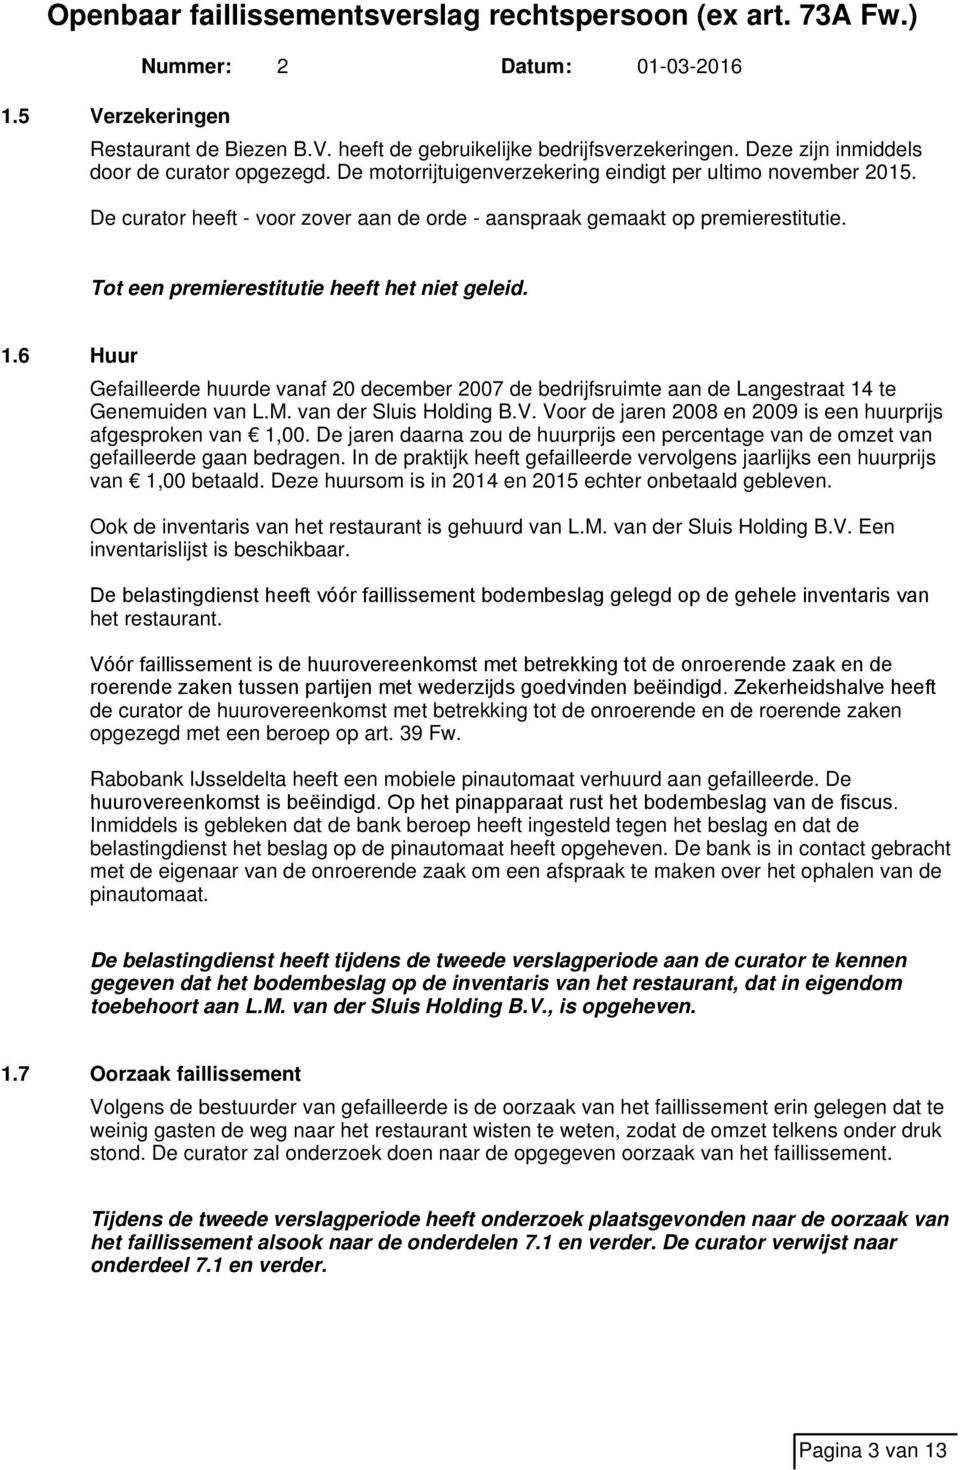 6 Huur Gefailleerde huurde vanaf 20 december 2007 de bedrijfsruimte aan de Langestraat 14 te Genemuiden van L.M. van der Sluis Holding B.V.